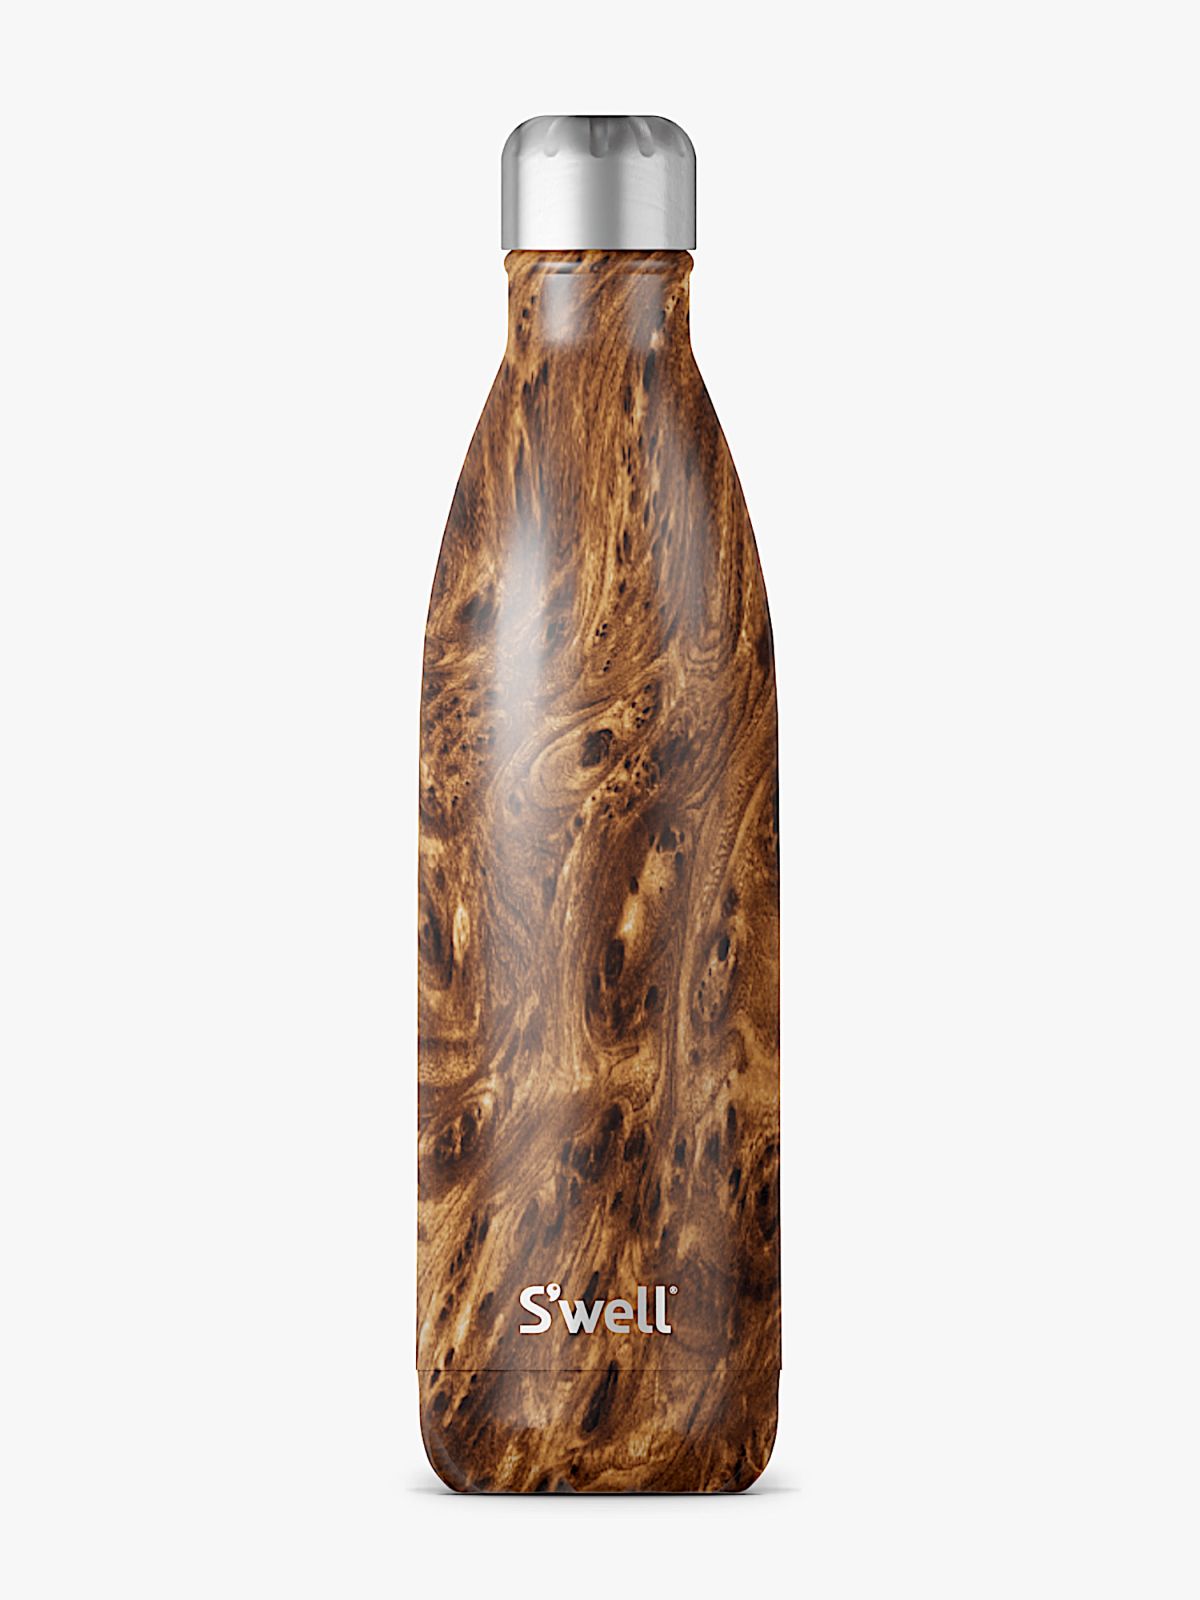  בקבוק תרמי בהדפס עץ של SWELL